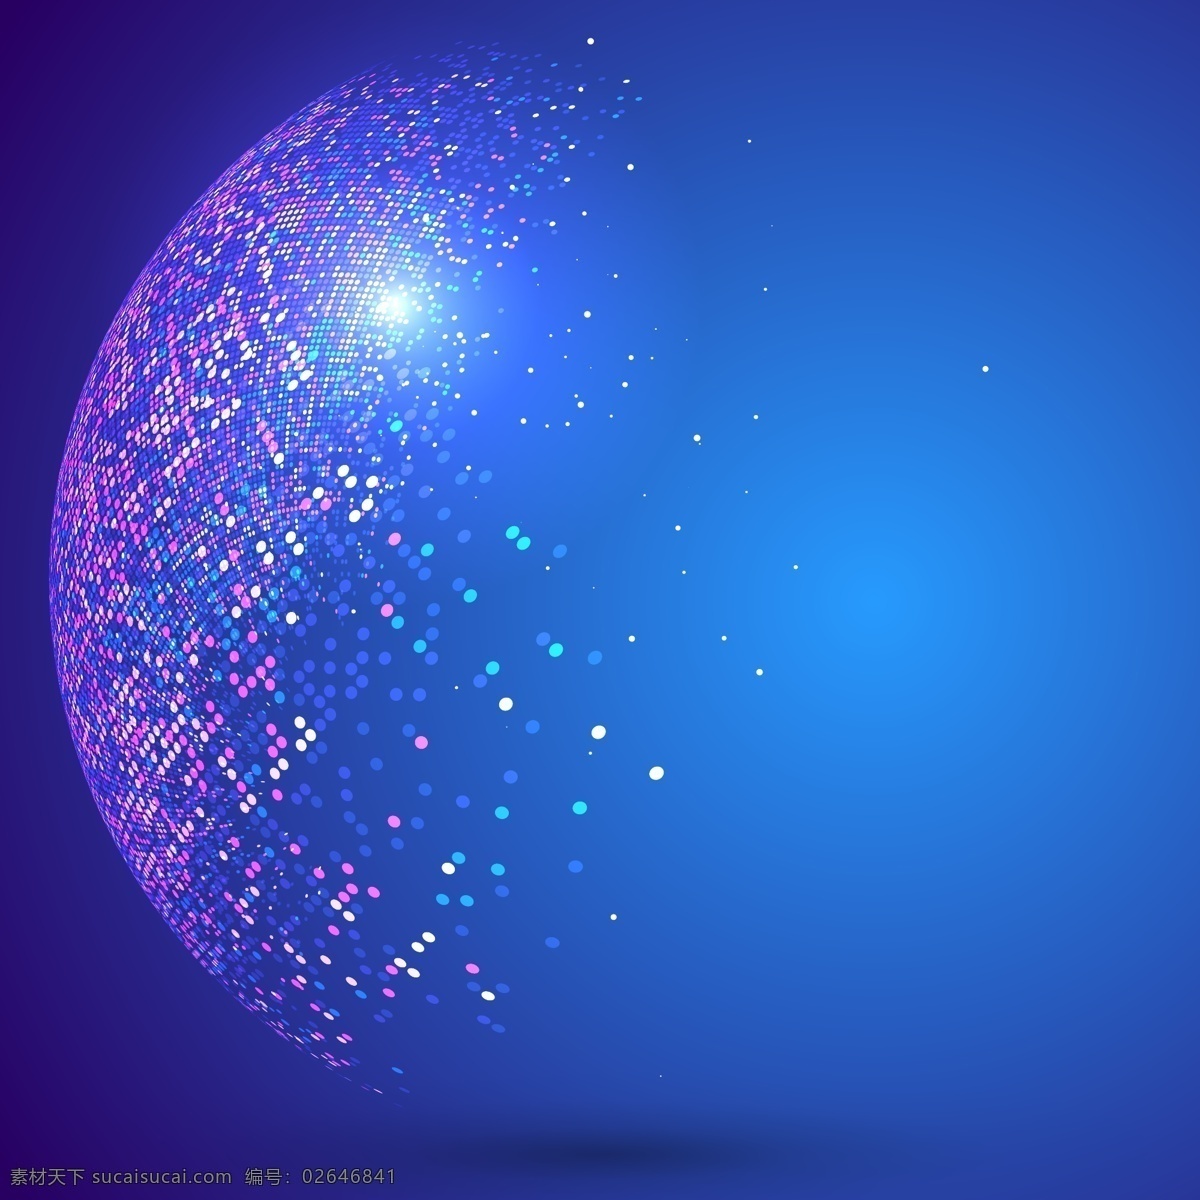 闪烁 粒子 抽象 背景 闪烁粒子 抽象地球 碎片 蓝色 科技 高端 蓝色背景 矢量素材